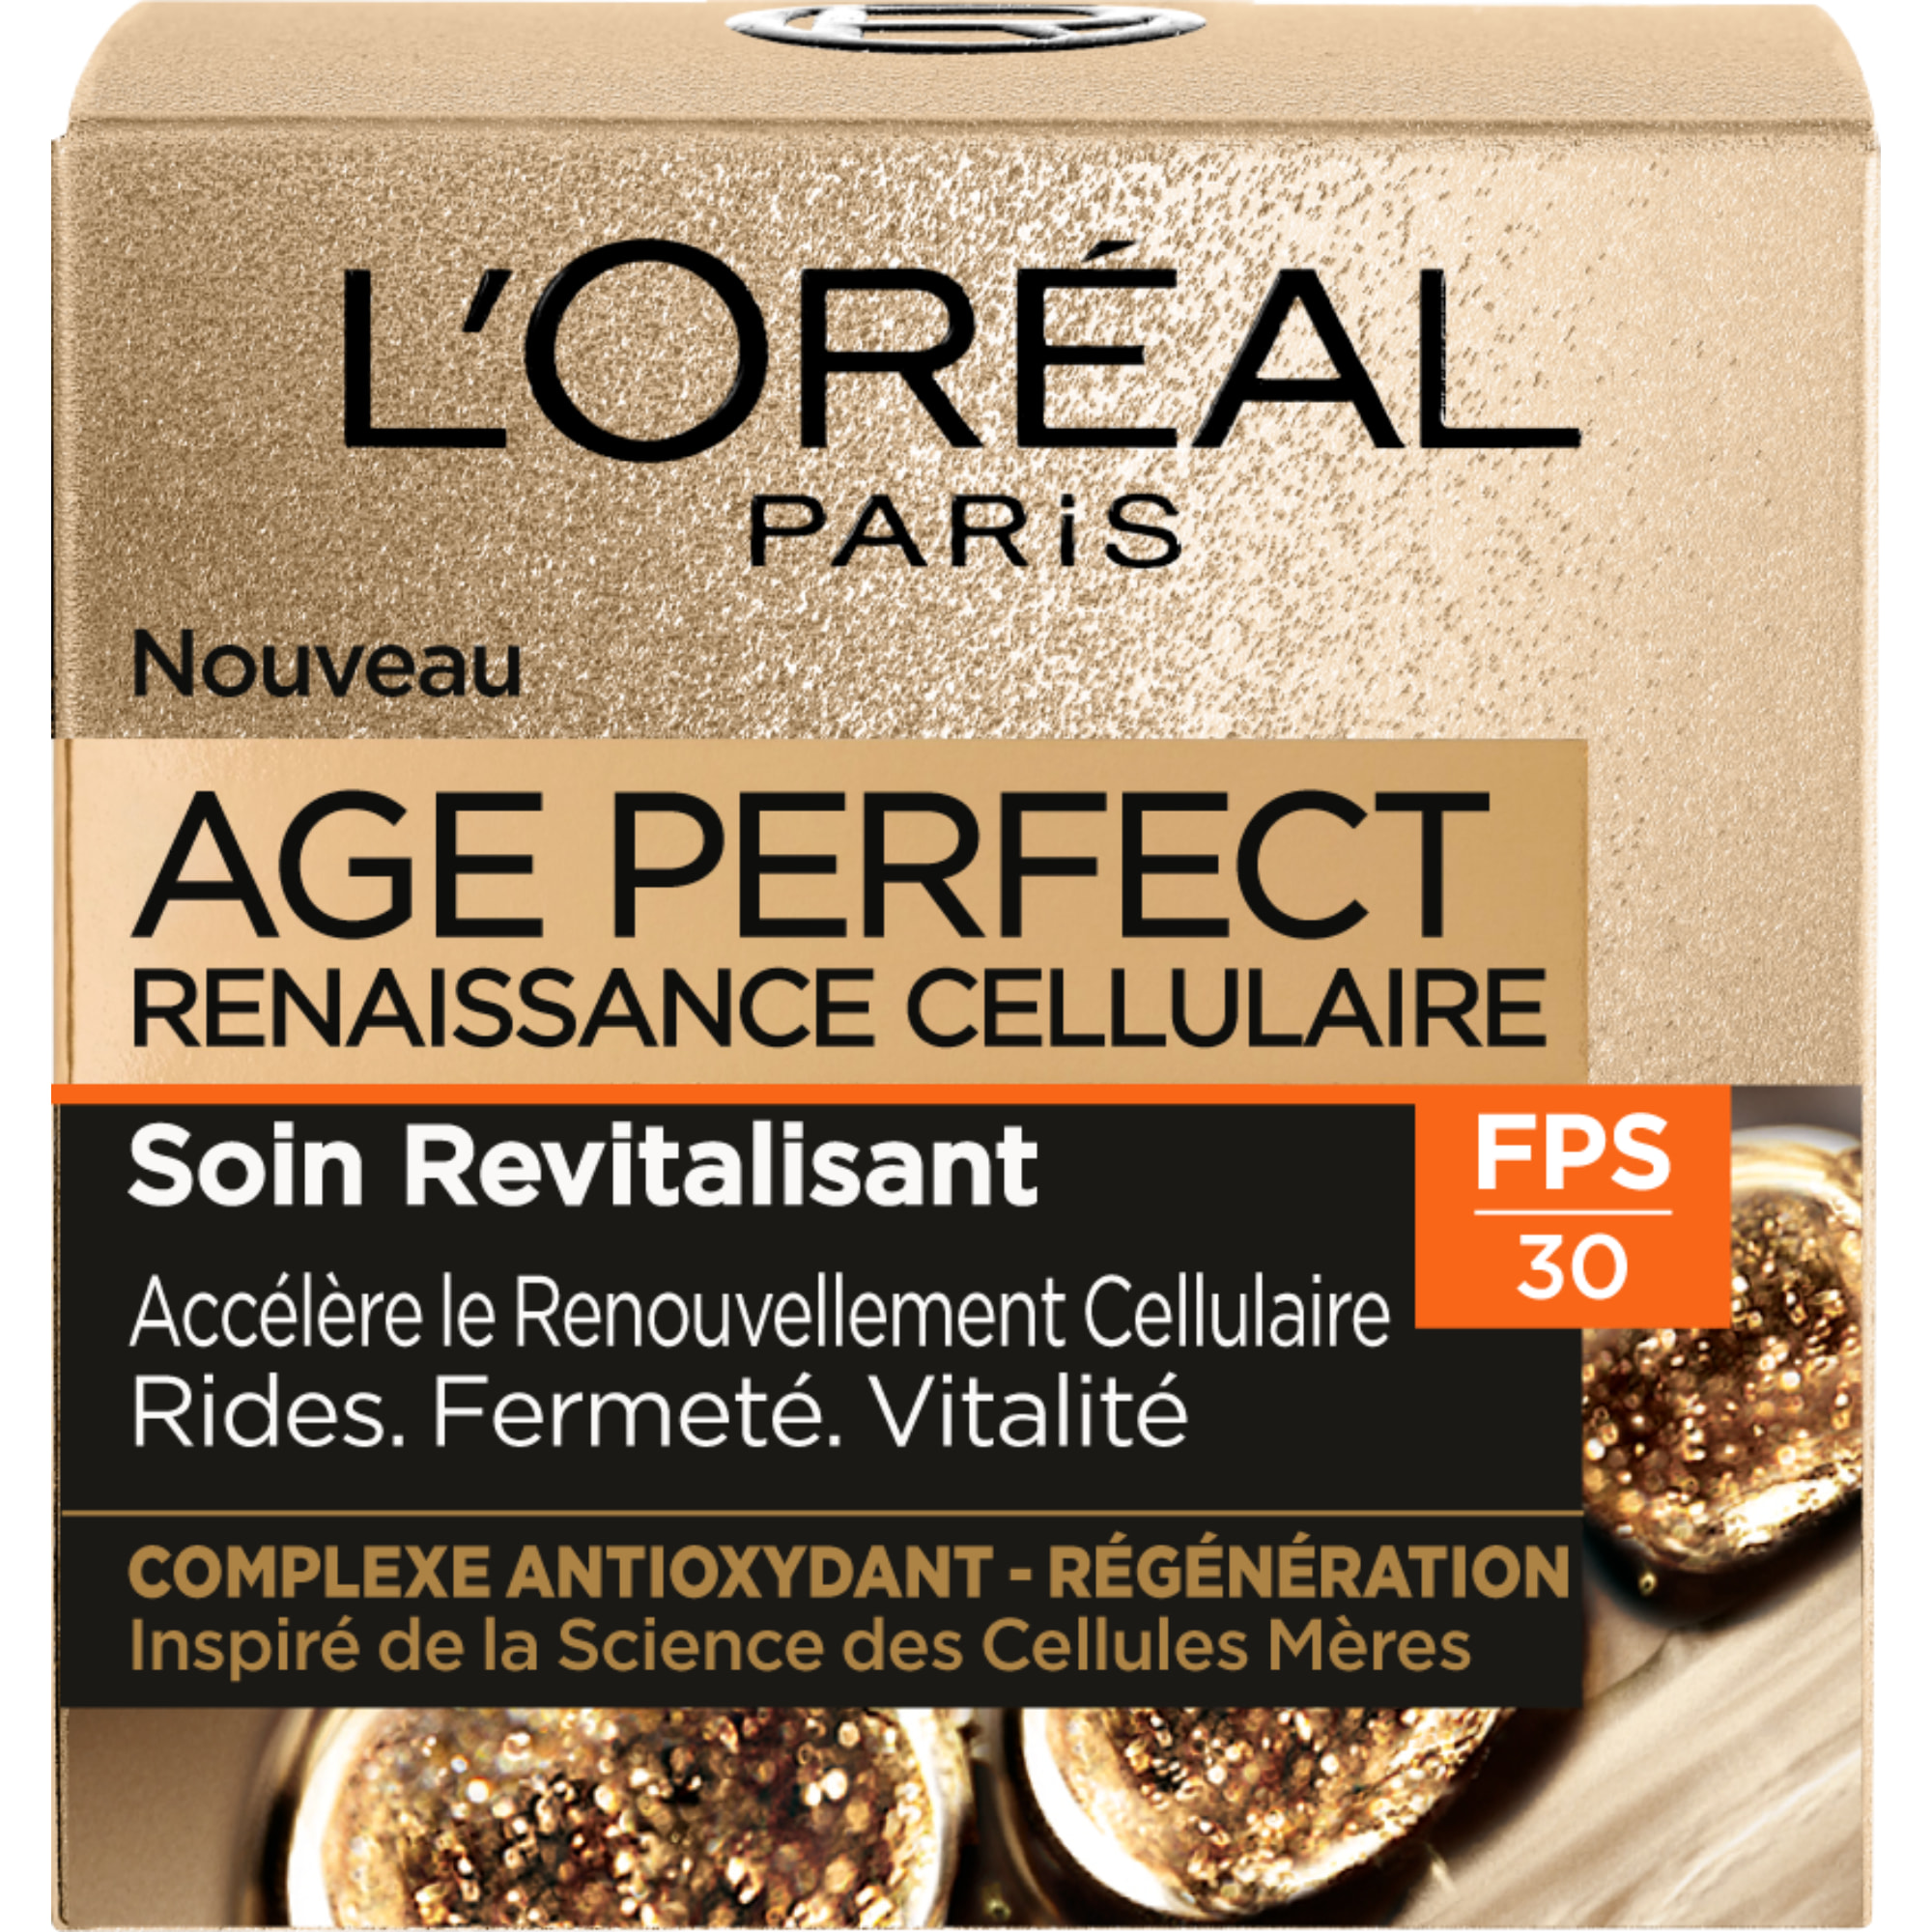 Age Perfect Renaissance Cellulaire Crème de Jour Revitalisante FPS 30